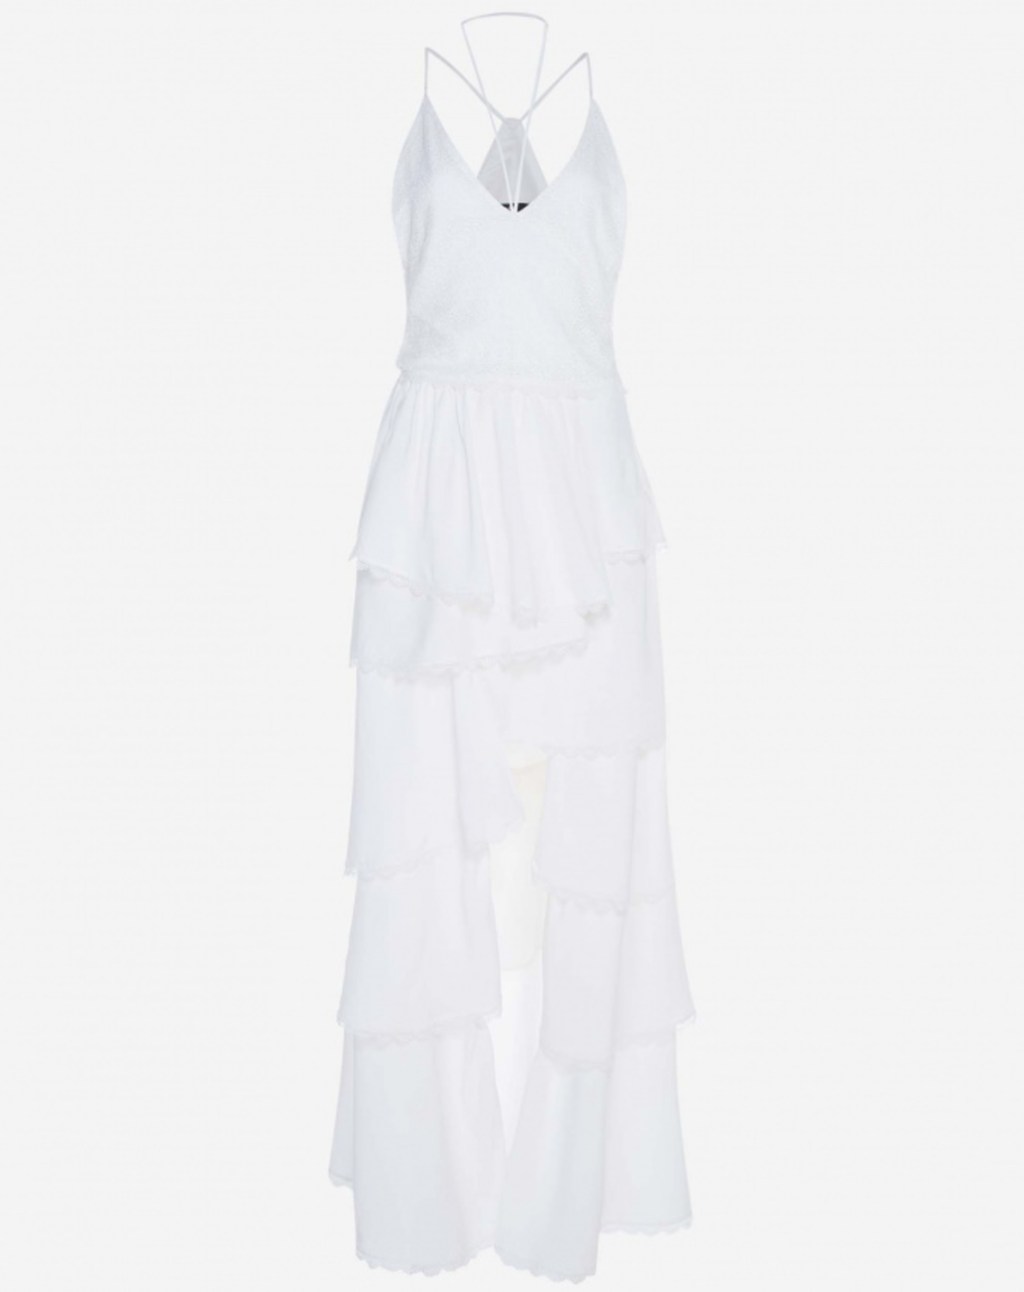 AMARO - Vestido assimétrico com renda guipir - R$ 199,90